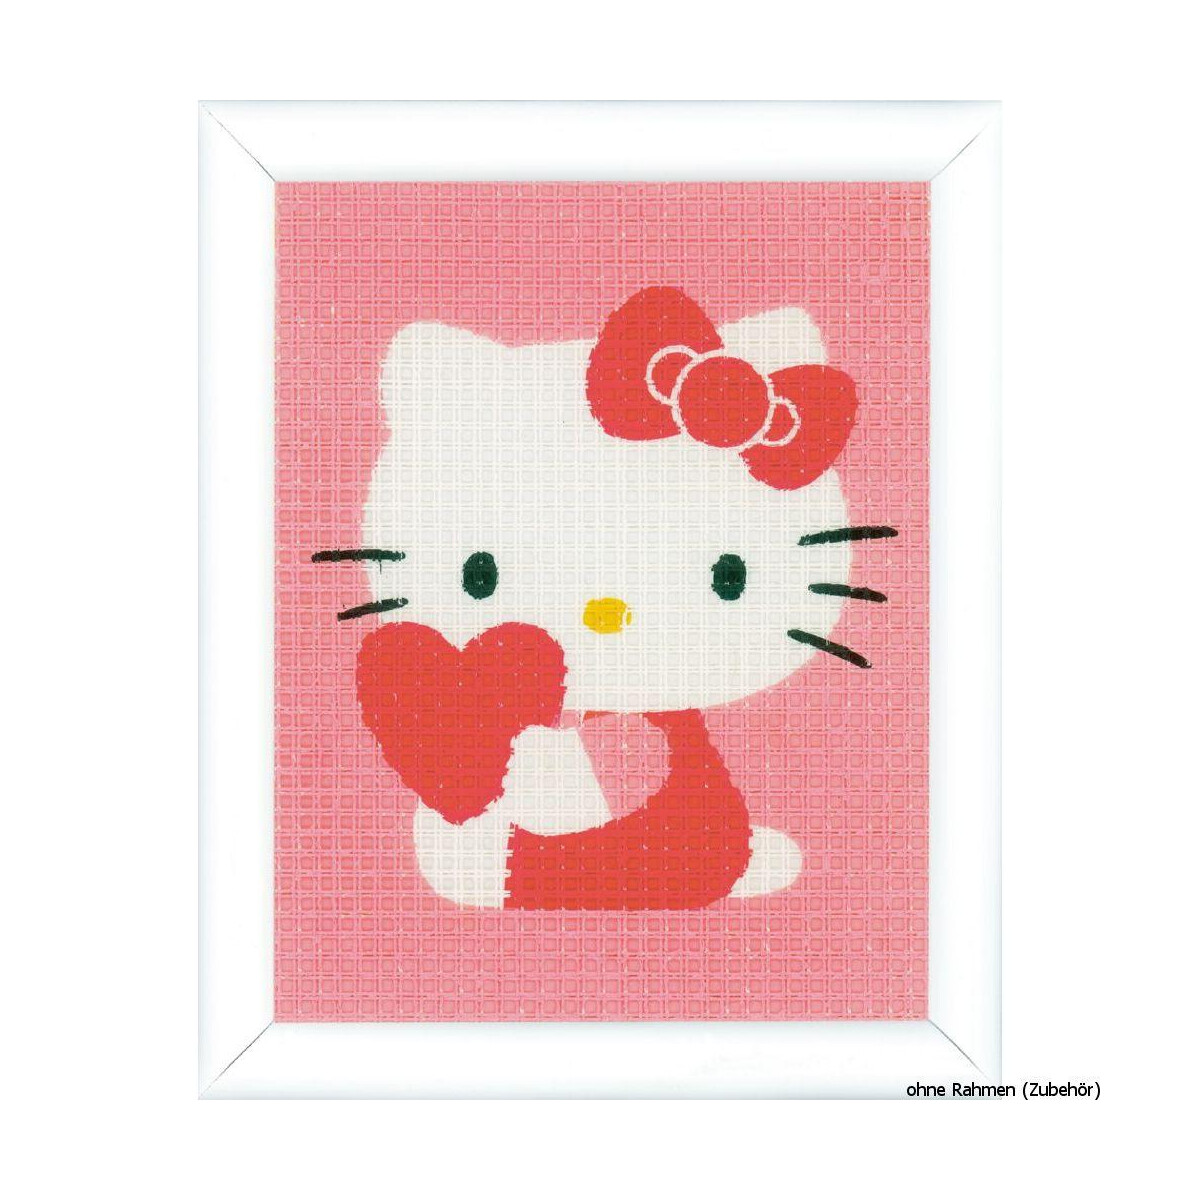 Paquete de bordado de Vervaco "Hello Kitty con...